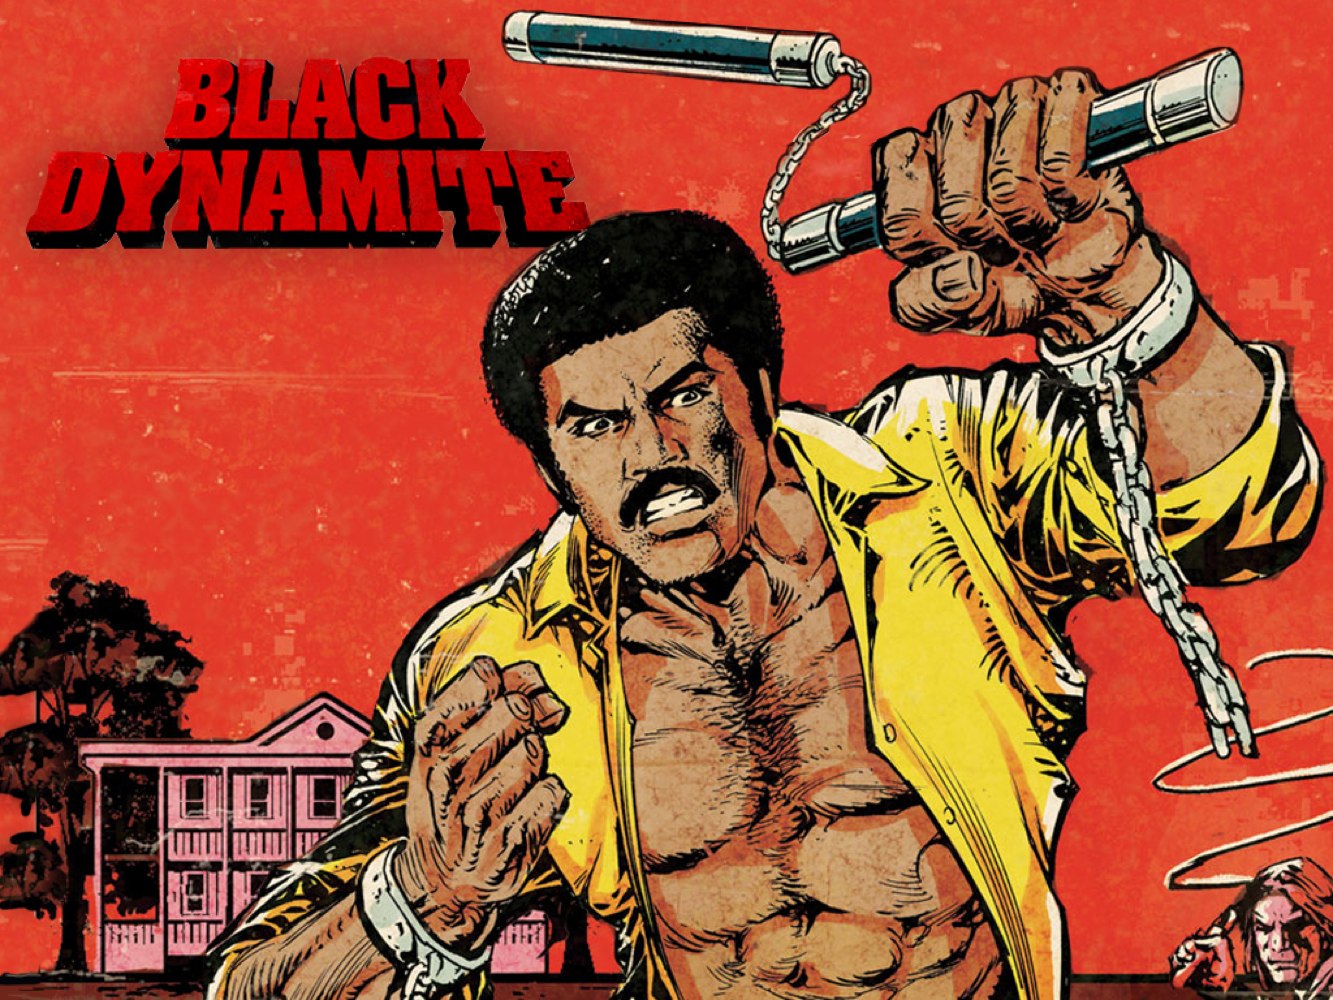 Black Dynamite Porn Movie - DAR TV and Films: Black Dynamite